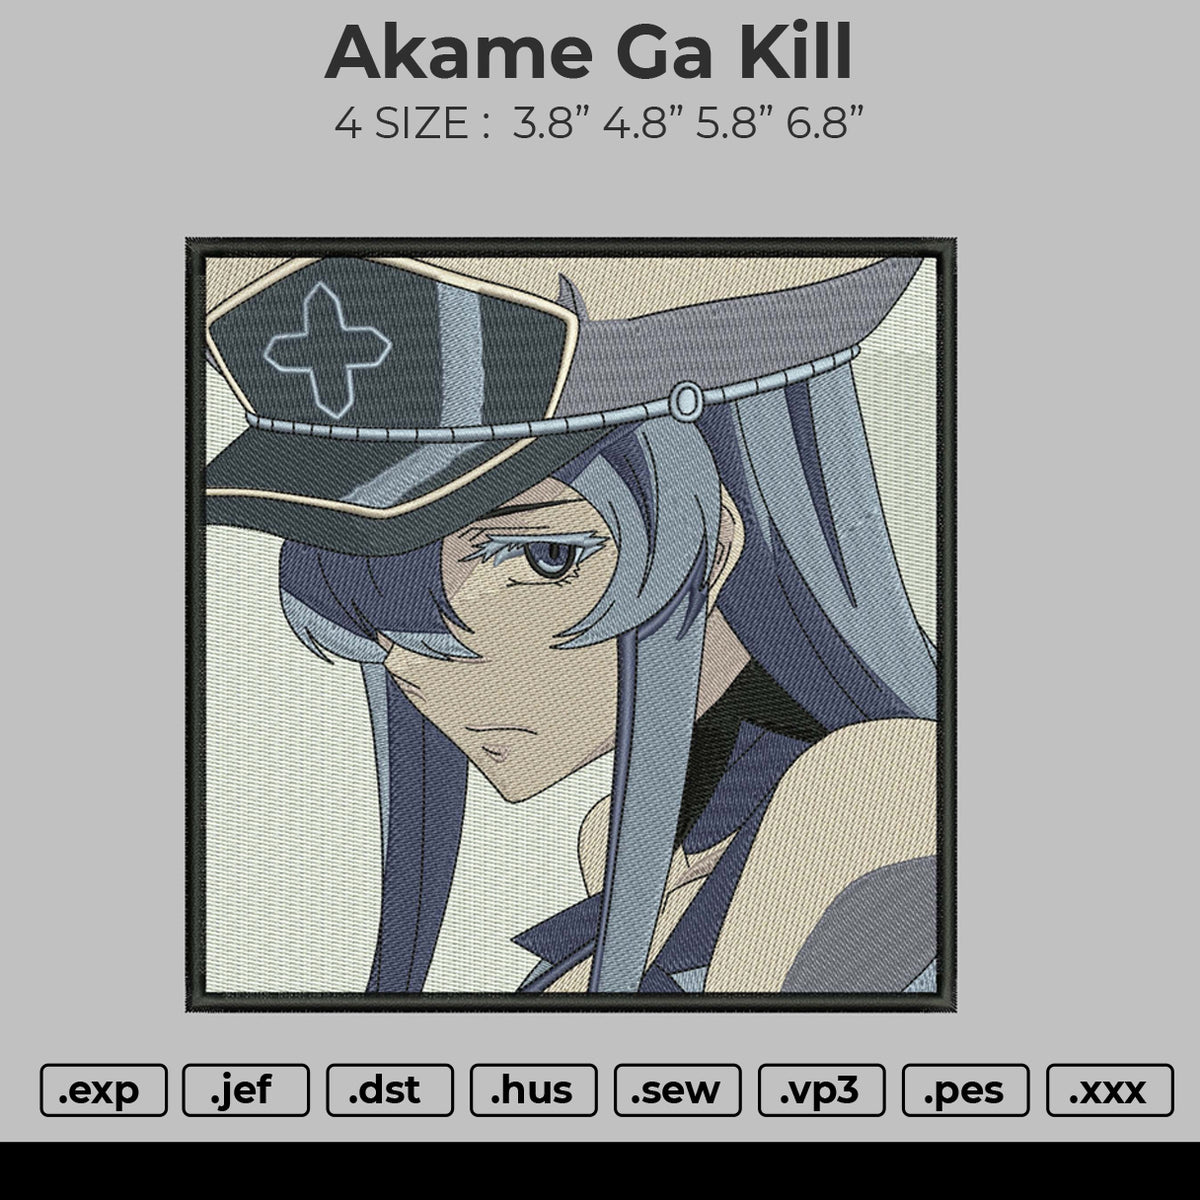 Esdeath Embroidery Design File, Akame ga Kill Anime Embroide